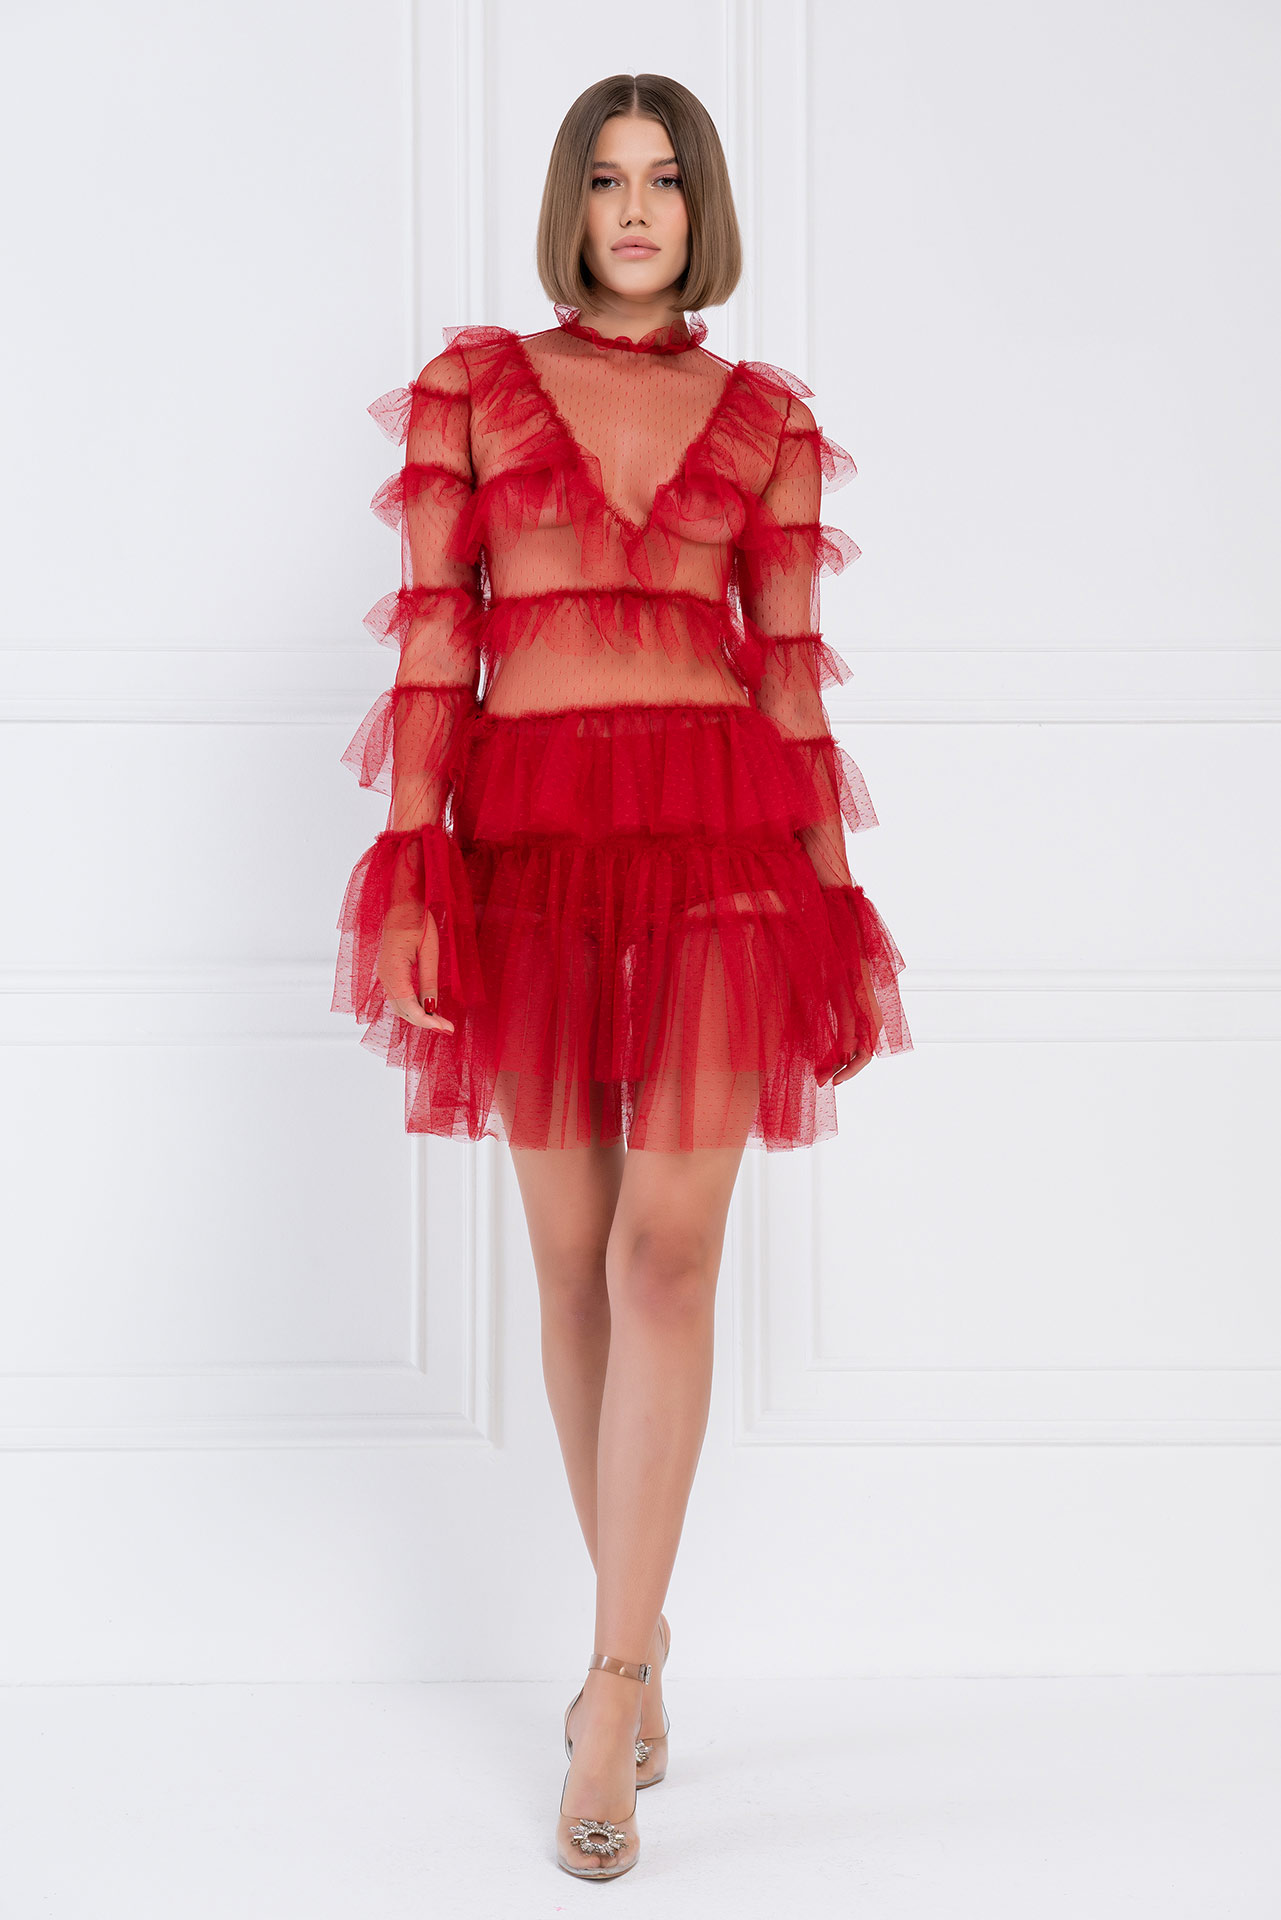 Прозрачное Платье с Рюшами красный Фатиновое Мини-Платье